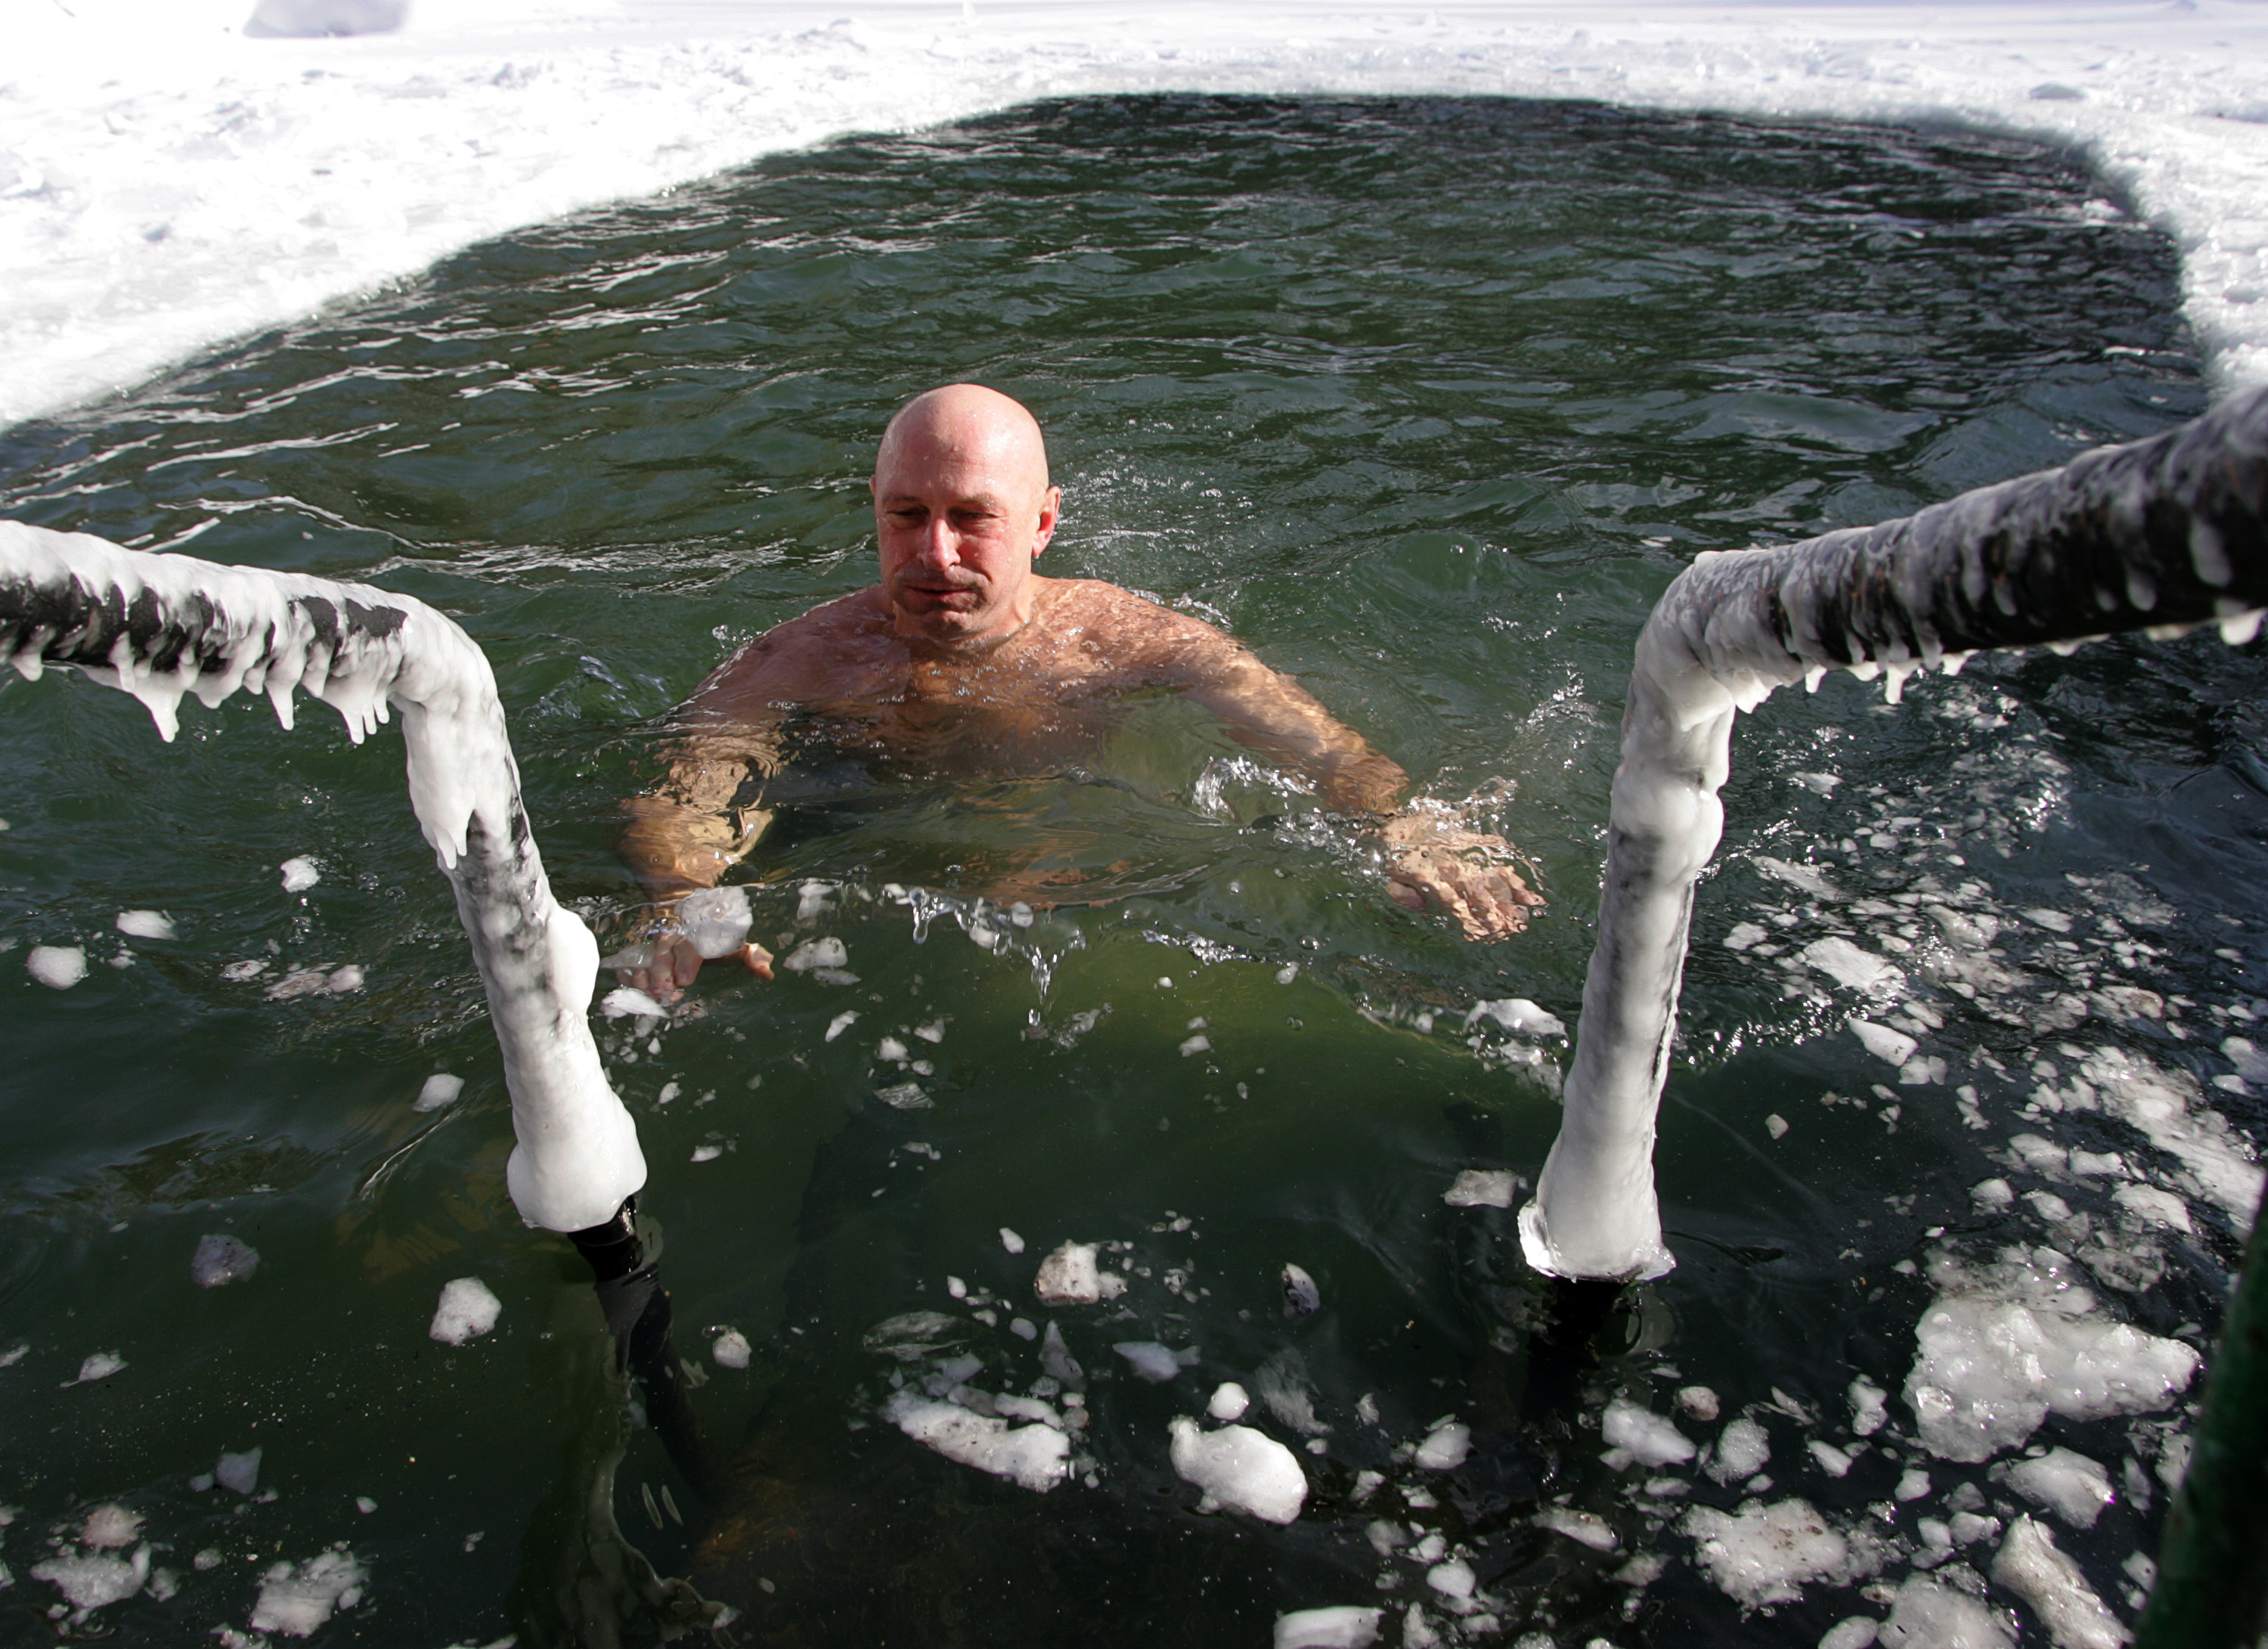 Practicar natación con bajas temperaturas puede amortiguar las respuestas inflamatorias que provocan ansiedad y depresión (Dima Korotayev/Epsilon/Getty Images)